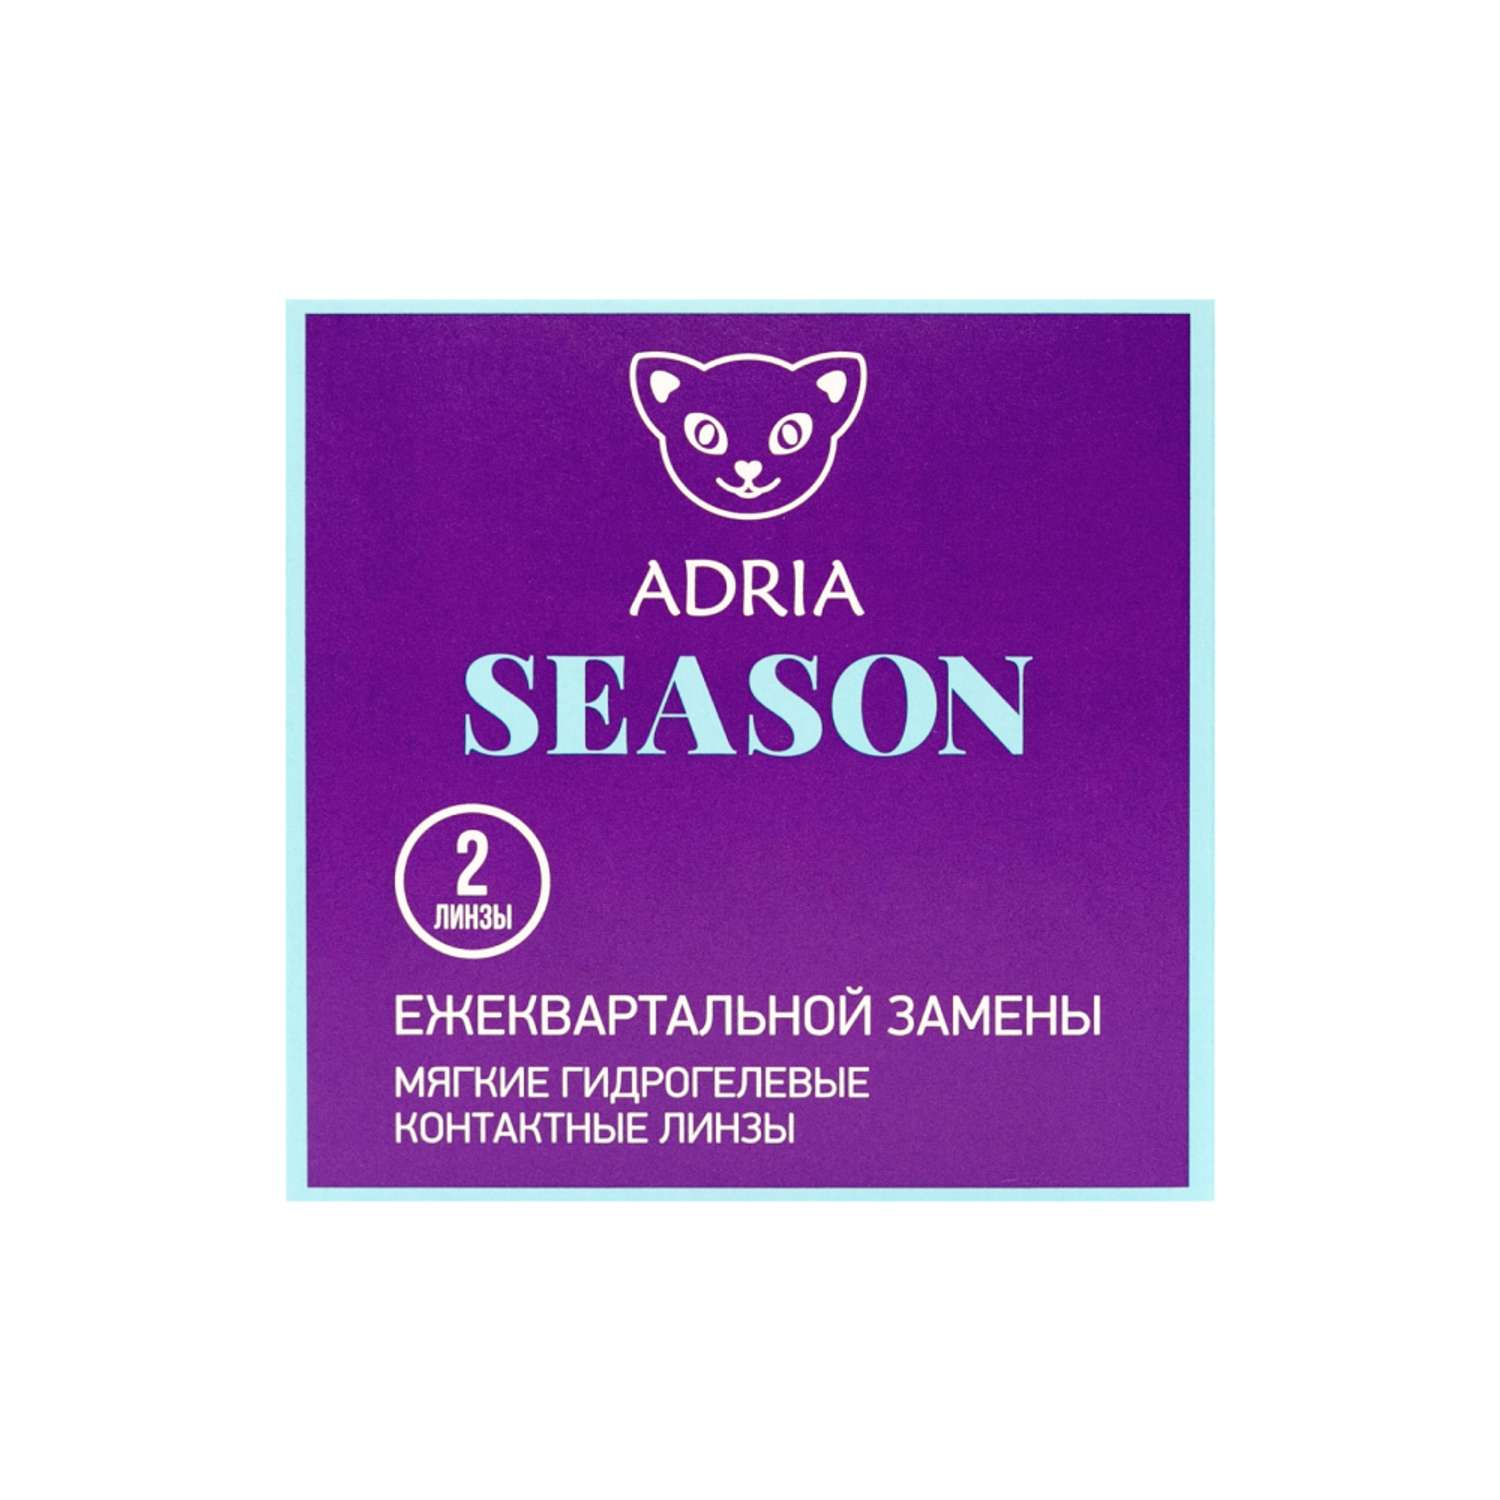 Контактные линзы ADRIA Season 2 линзы R 8.6 -4.50 - фото 6